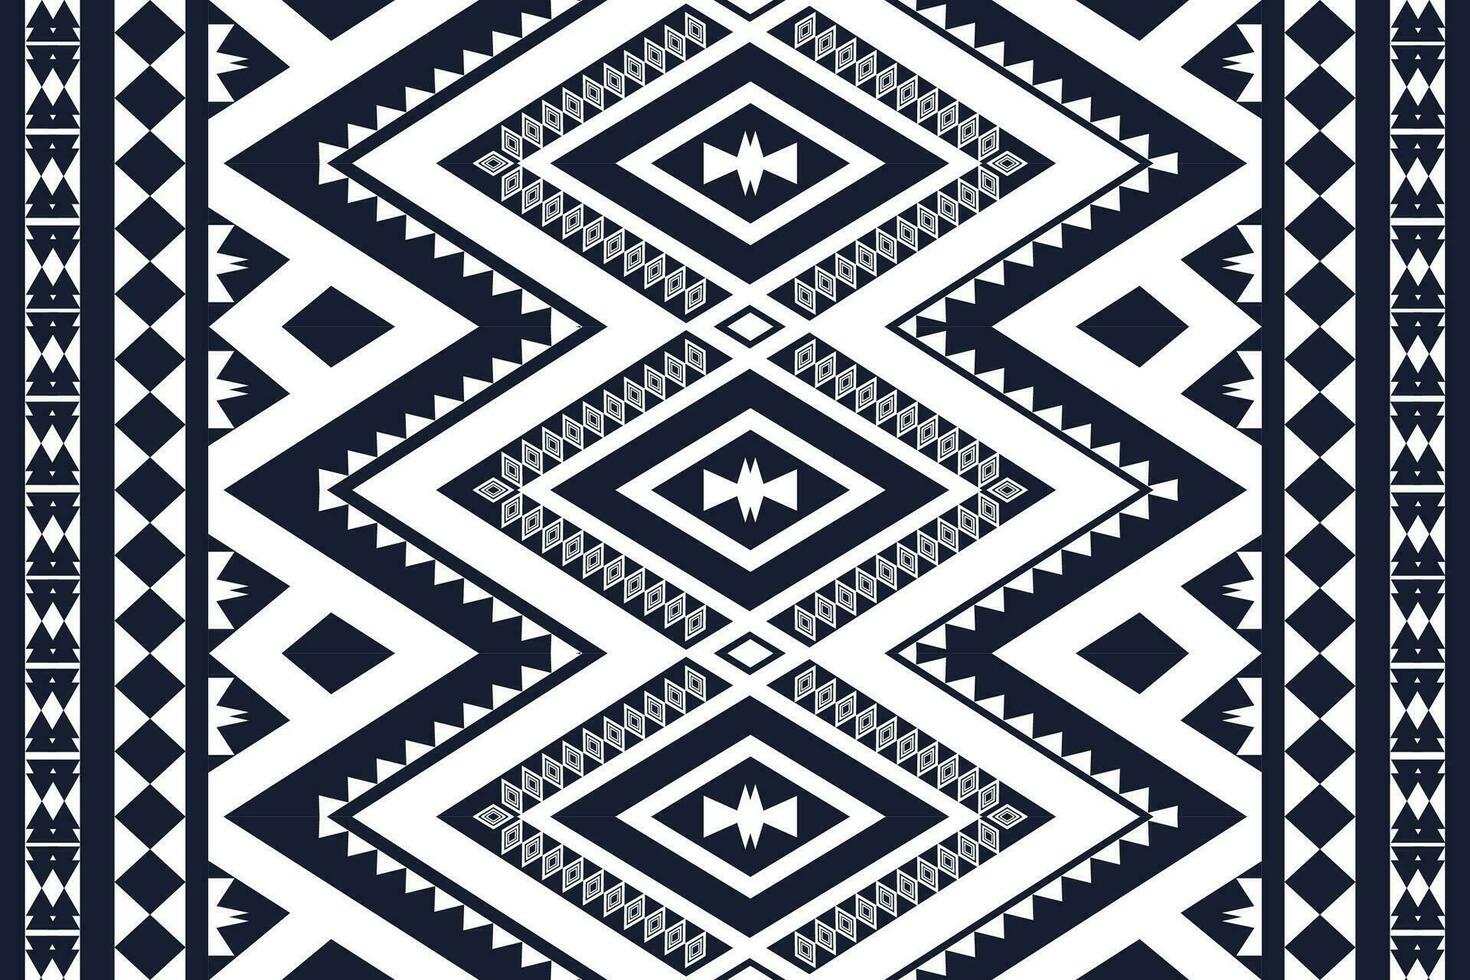 design tradicional de padrão étnico geométrico para plano de fundo, tapete, papel de parede, roupas, embrulho, batik, tecido, sarongue, estilo de bordado de ilustração vetorial. vetor